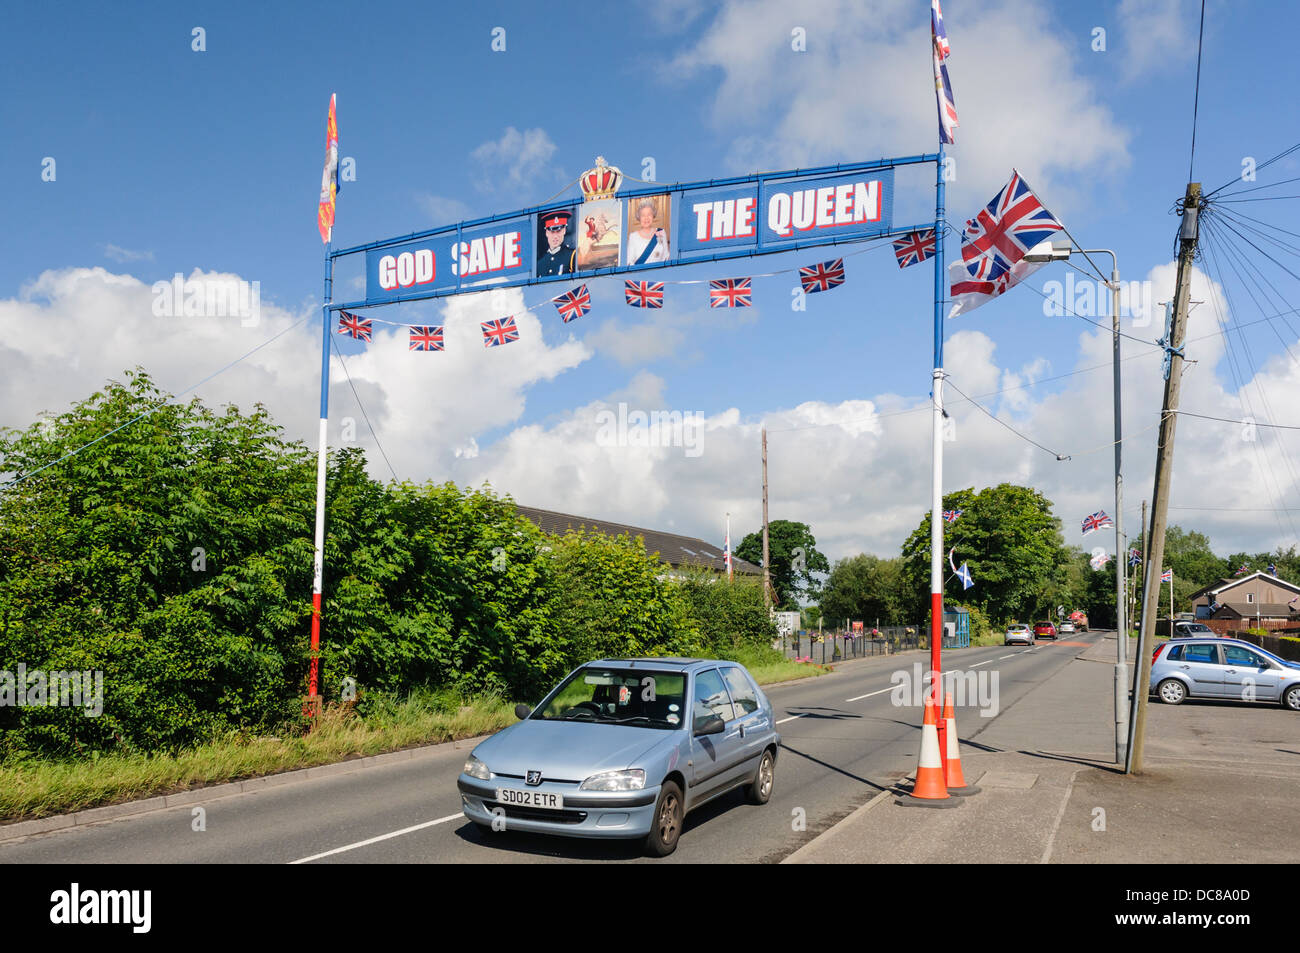 Un passage de l'orange au-dessus d'une route dans la région de Kilkeel avec des drapeaux, des photos de la Reine et le Prince William, avec "God save the Queen' Banque D'Images